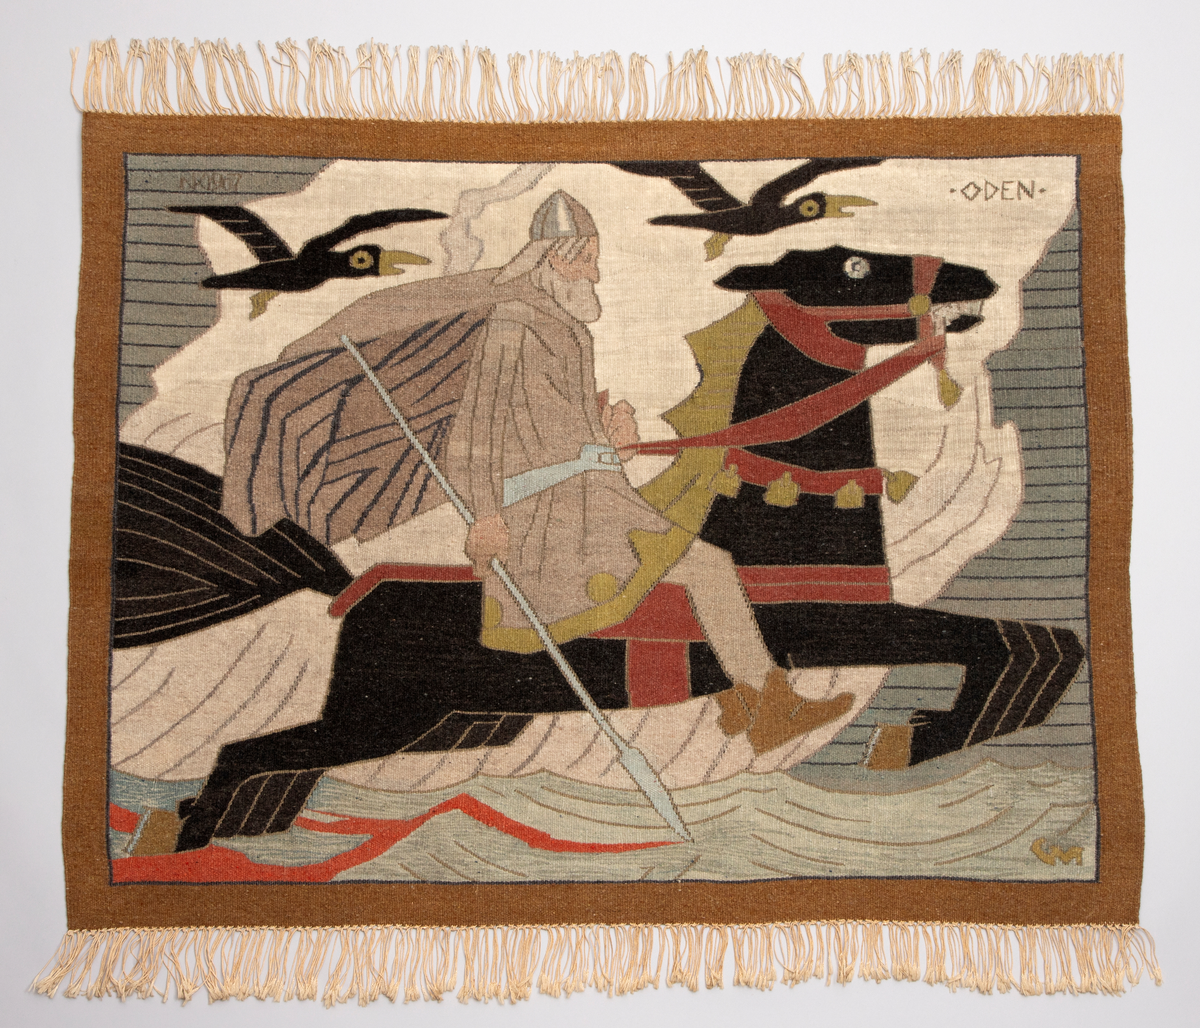 Motivet fremstiller Odin ridende på Sleipner, flankert av Hugin og Munin. Teppet er basert på Munthes vignett til "Harald Hårfagres saga" i den nye praktutgaven av Snorres "Kongesagaer" (1899).